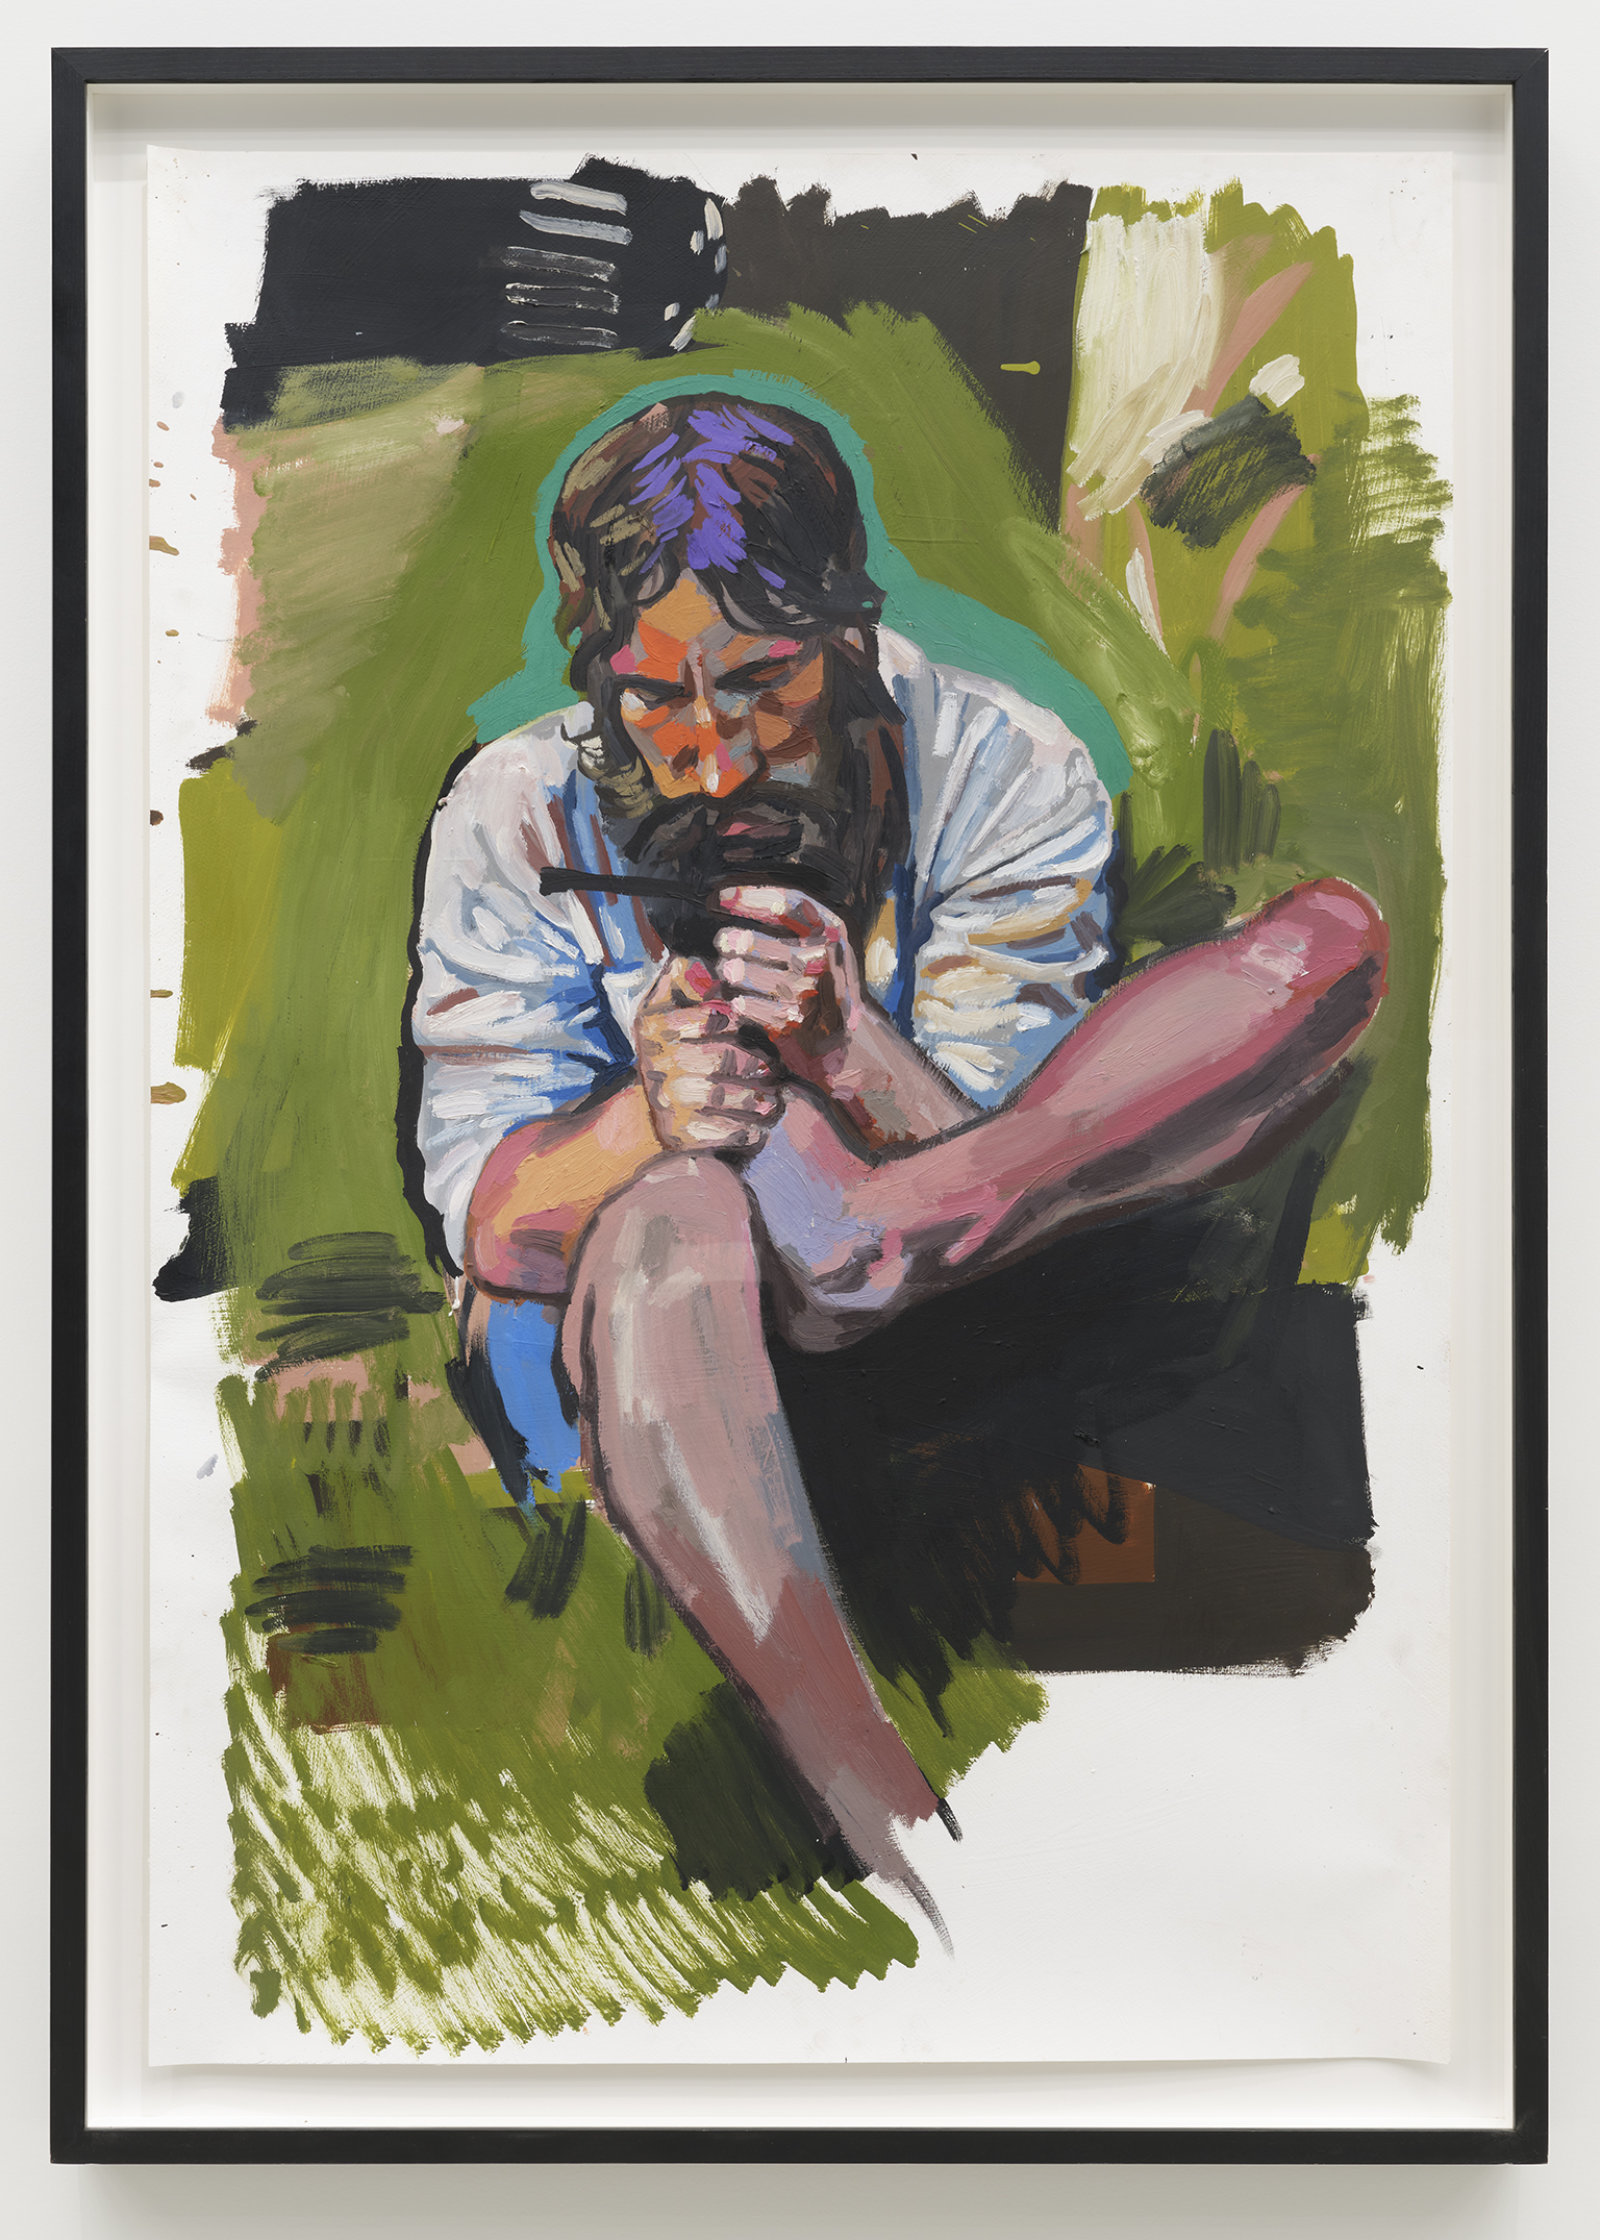 Damian Moppett, 1815/1962 Self Portrait, 2006, oil on paper, 52 x 37 in. (132 x 93 cm)